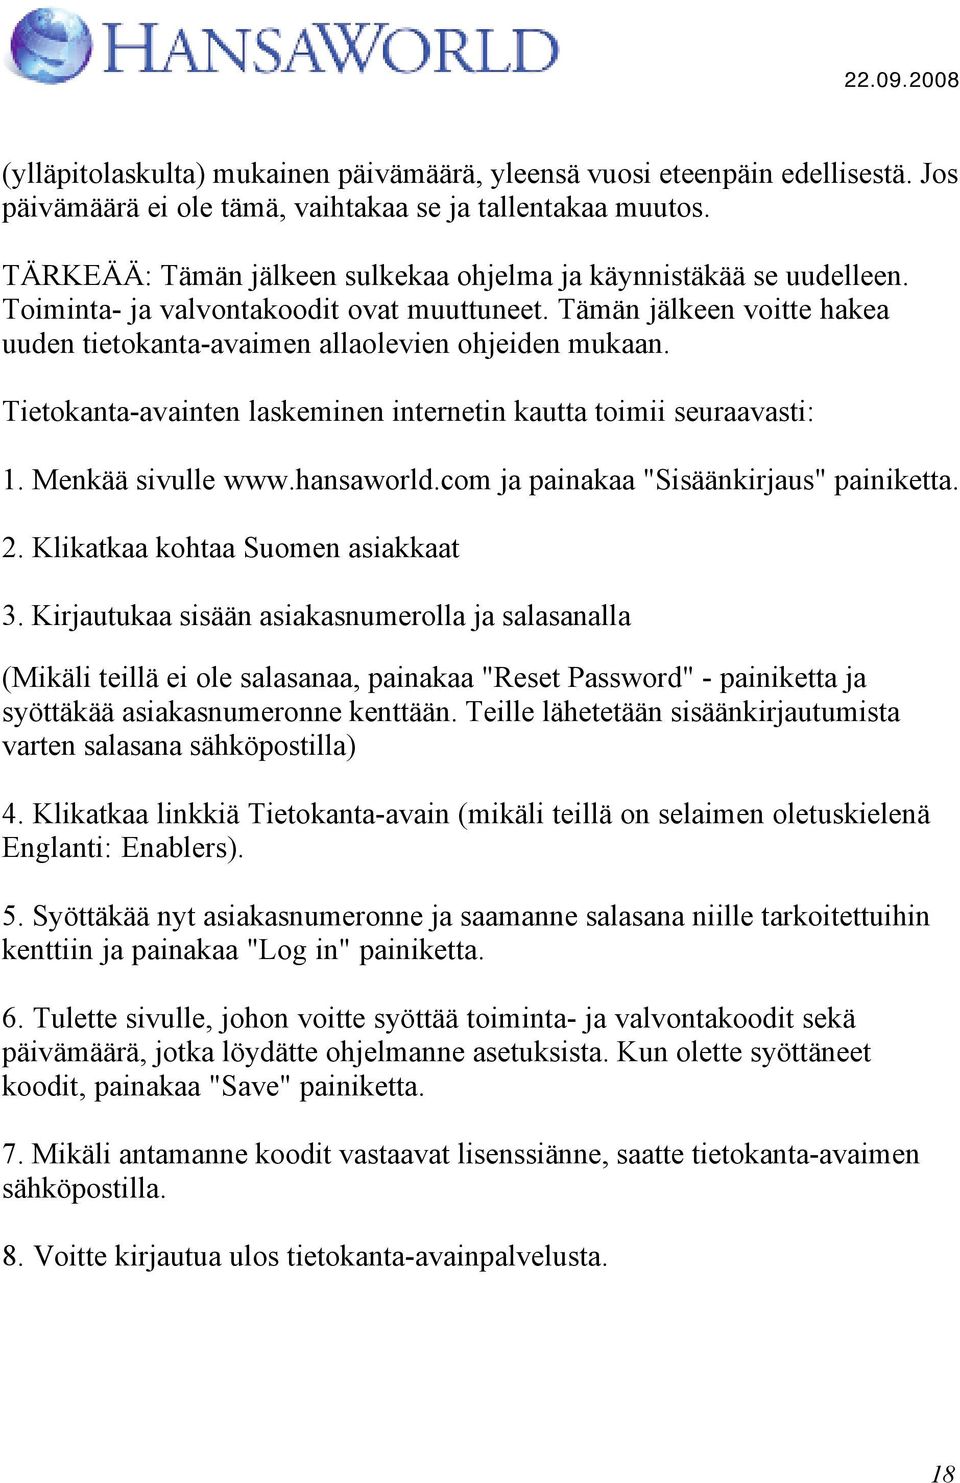 Tietokanta-avainten laskeminen internetin kautta toimii seuraavasti: 1. Menkää sivulle www.hansaworld.com ja painakaa "Sisäänkirjaus" painiketta. 2. Klikatkaa kohtaa Suomen asiakkaat 3.